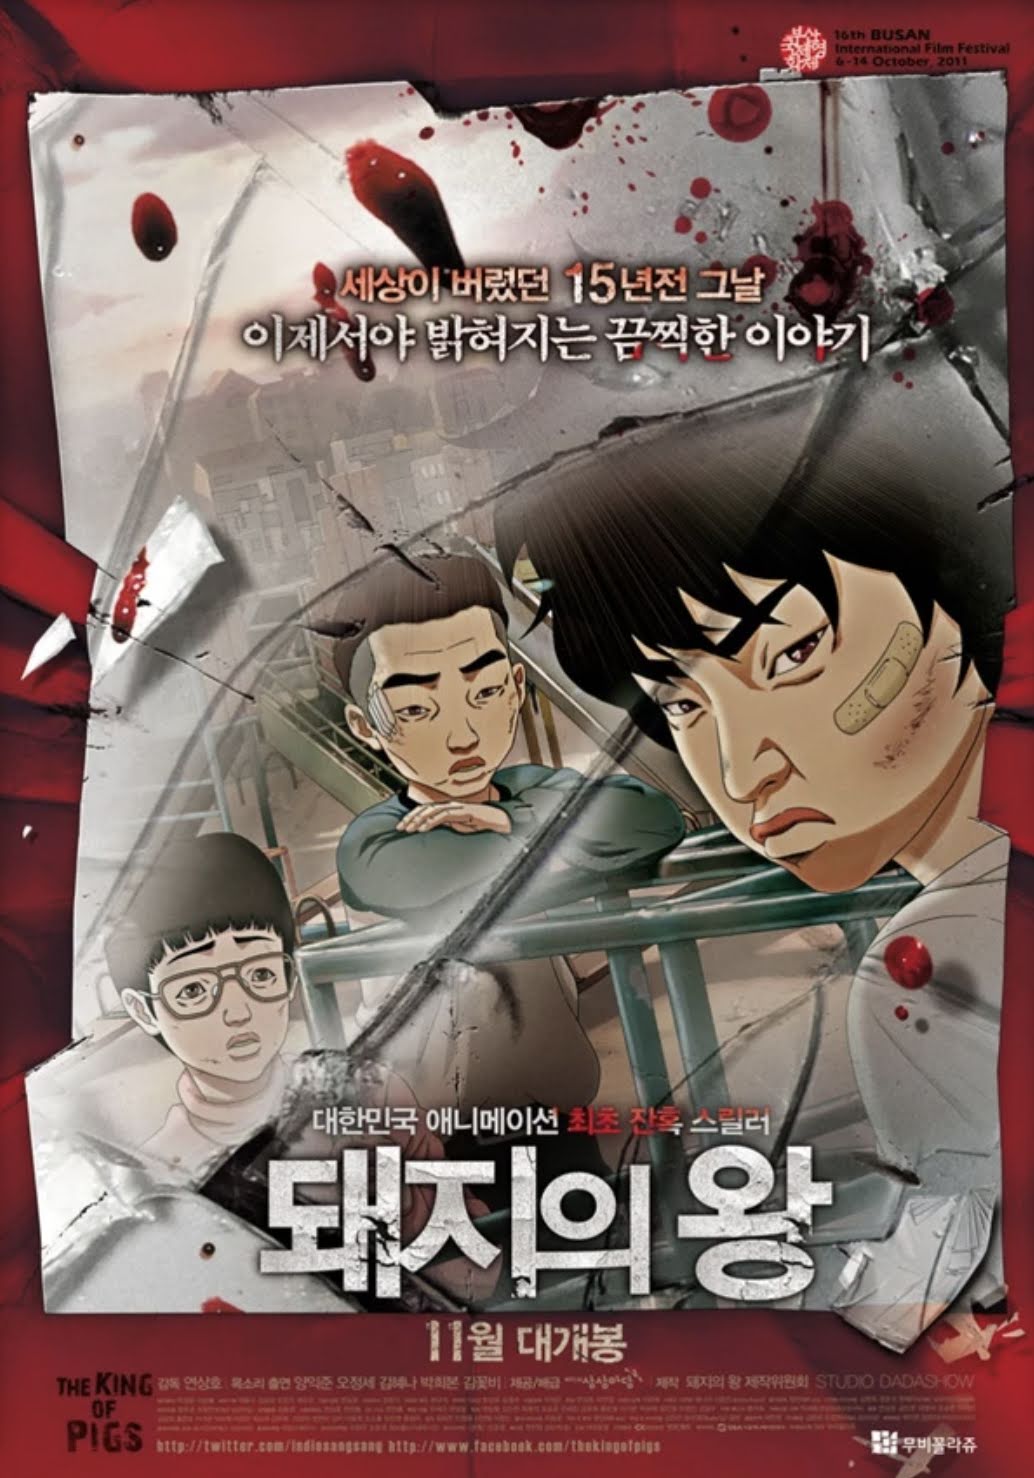 Корейский мультфильм о школьном насилии будет адаптирован в виде дорамы